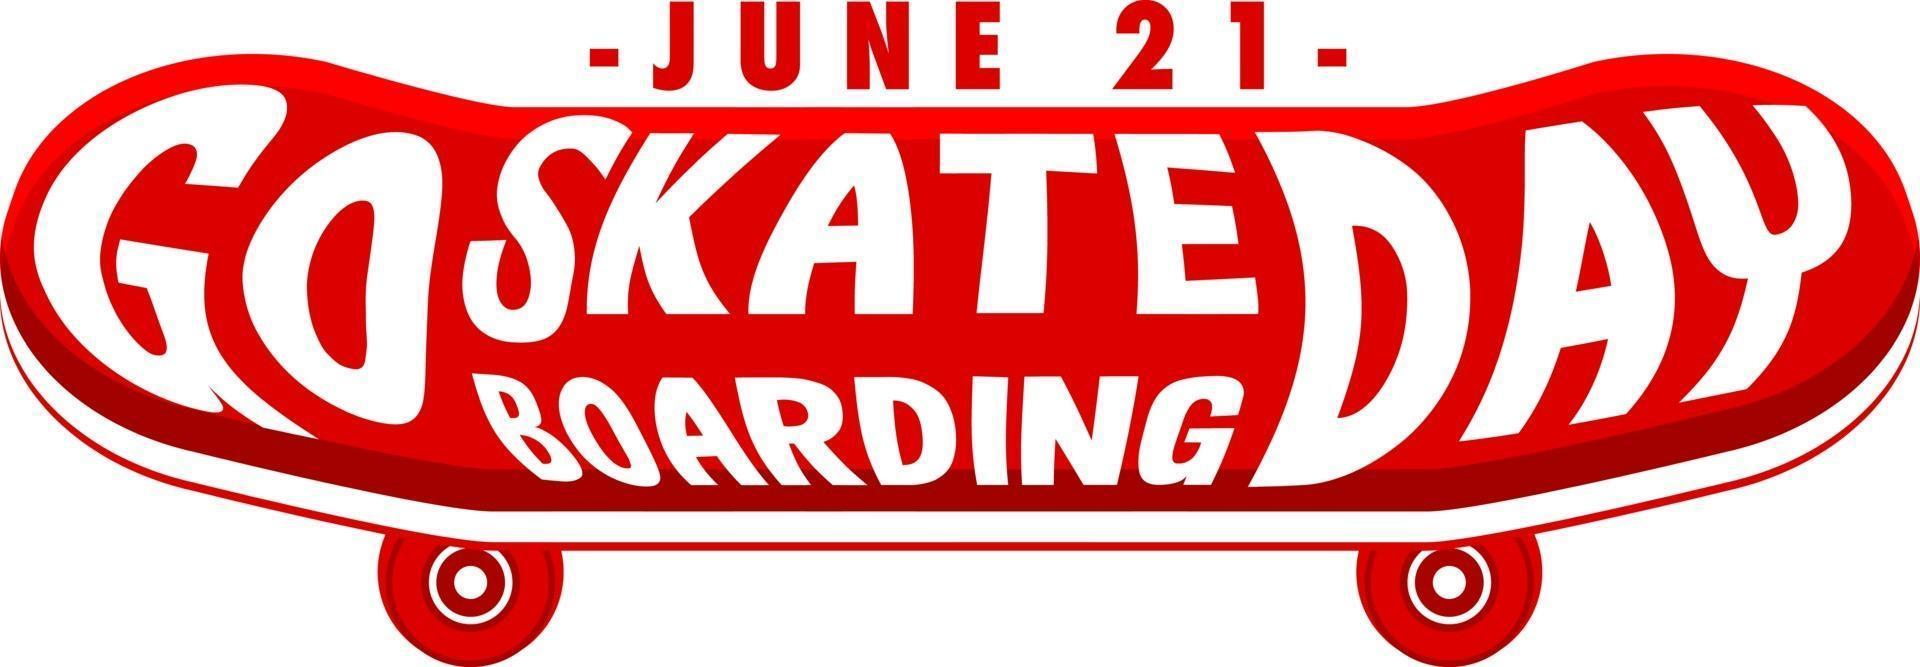 Go Skateboarding Day font on skateboard banner isolated vector